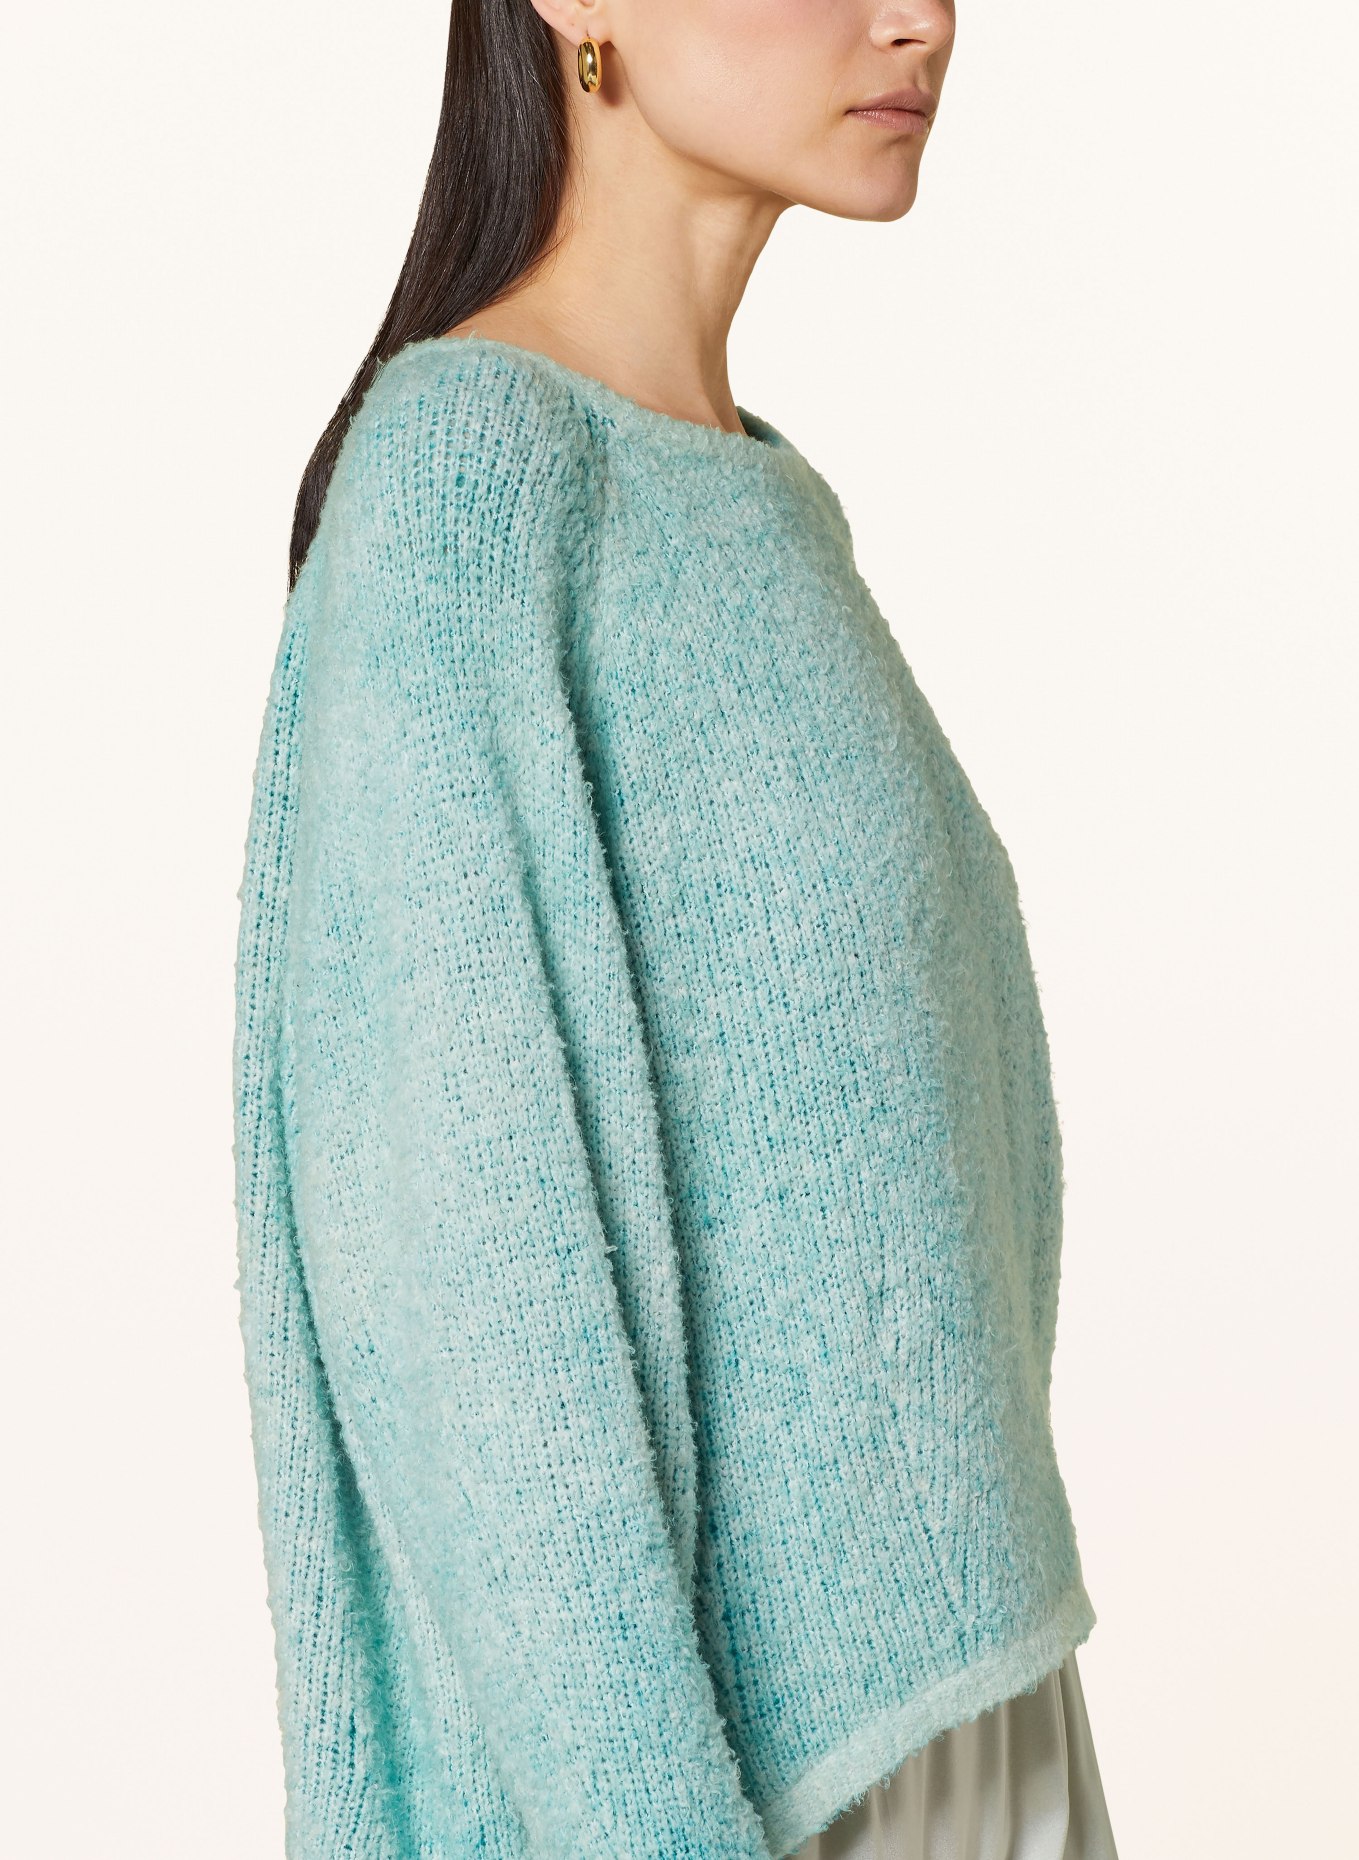 AVANT TOI Sweater, Color: 628 jade grün (Image 4)